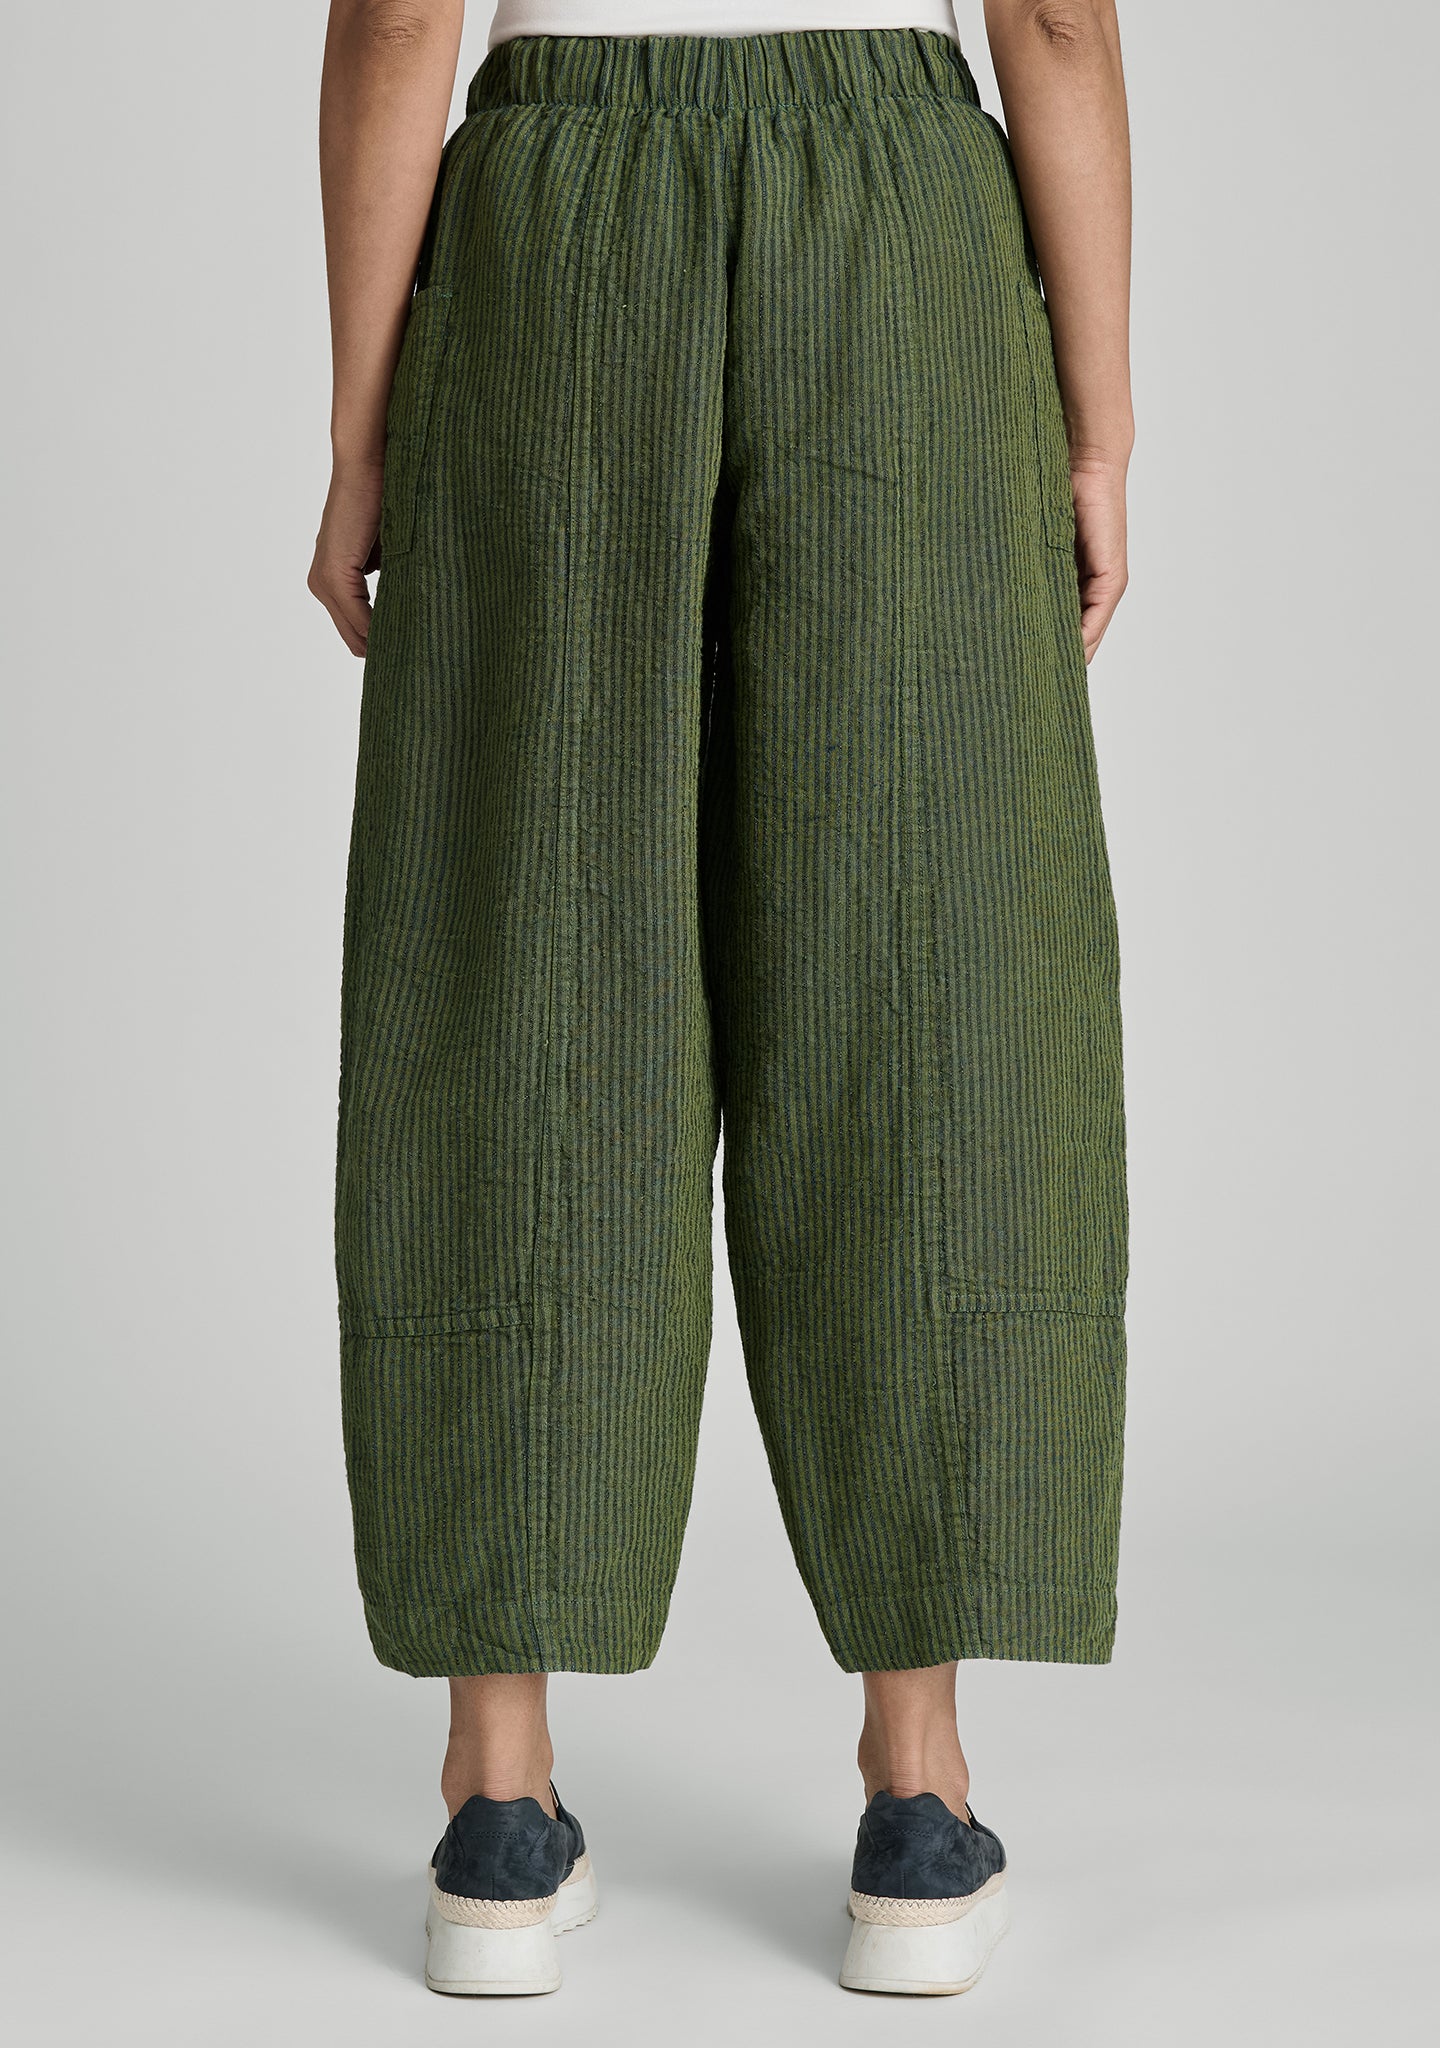 seamly pant linen pants details